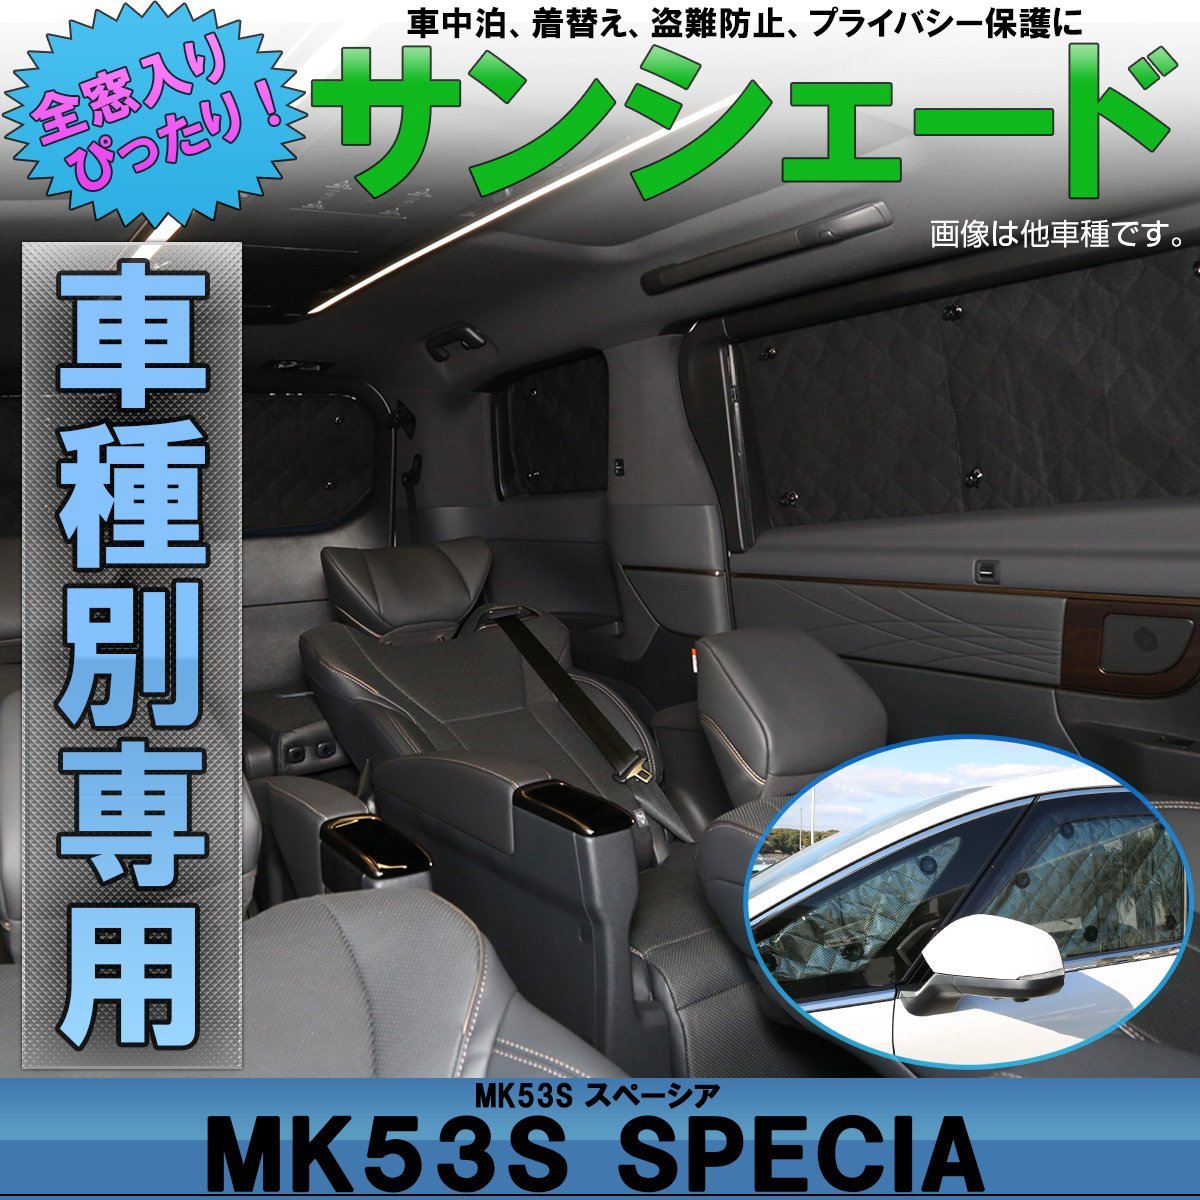 MK53S スペーシア/スペーシア カスタム/スペーシア ギア サンシェード 専用設計 全窓用セット ブラックメッシュ 車中泊 キャンプ S-825_画像1